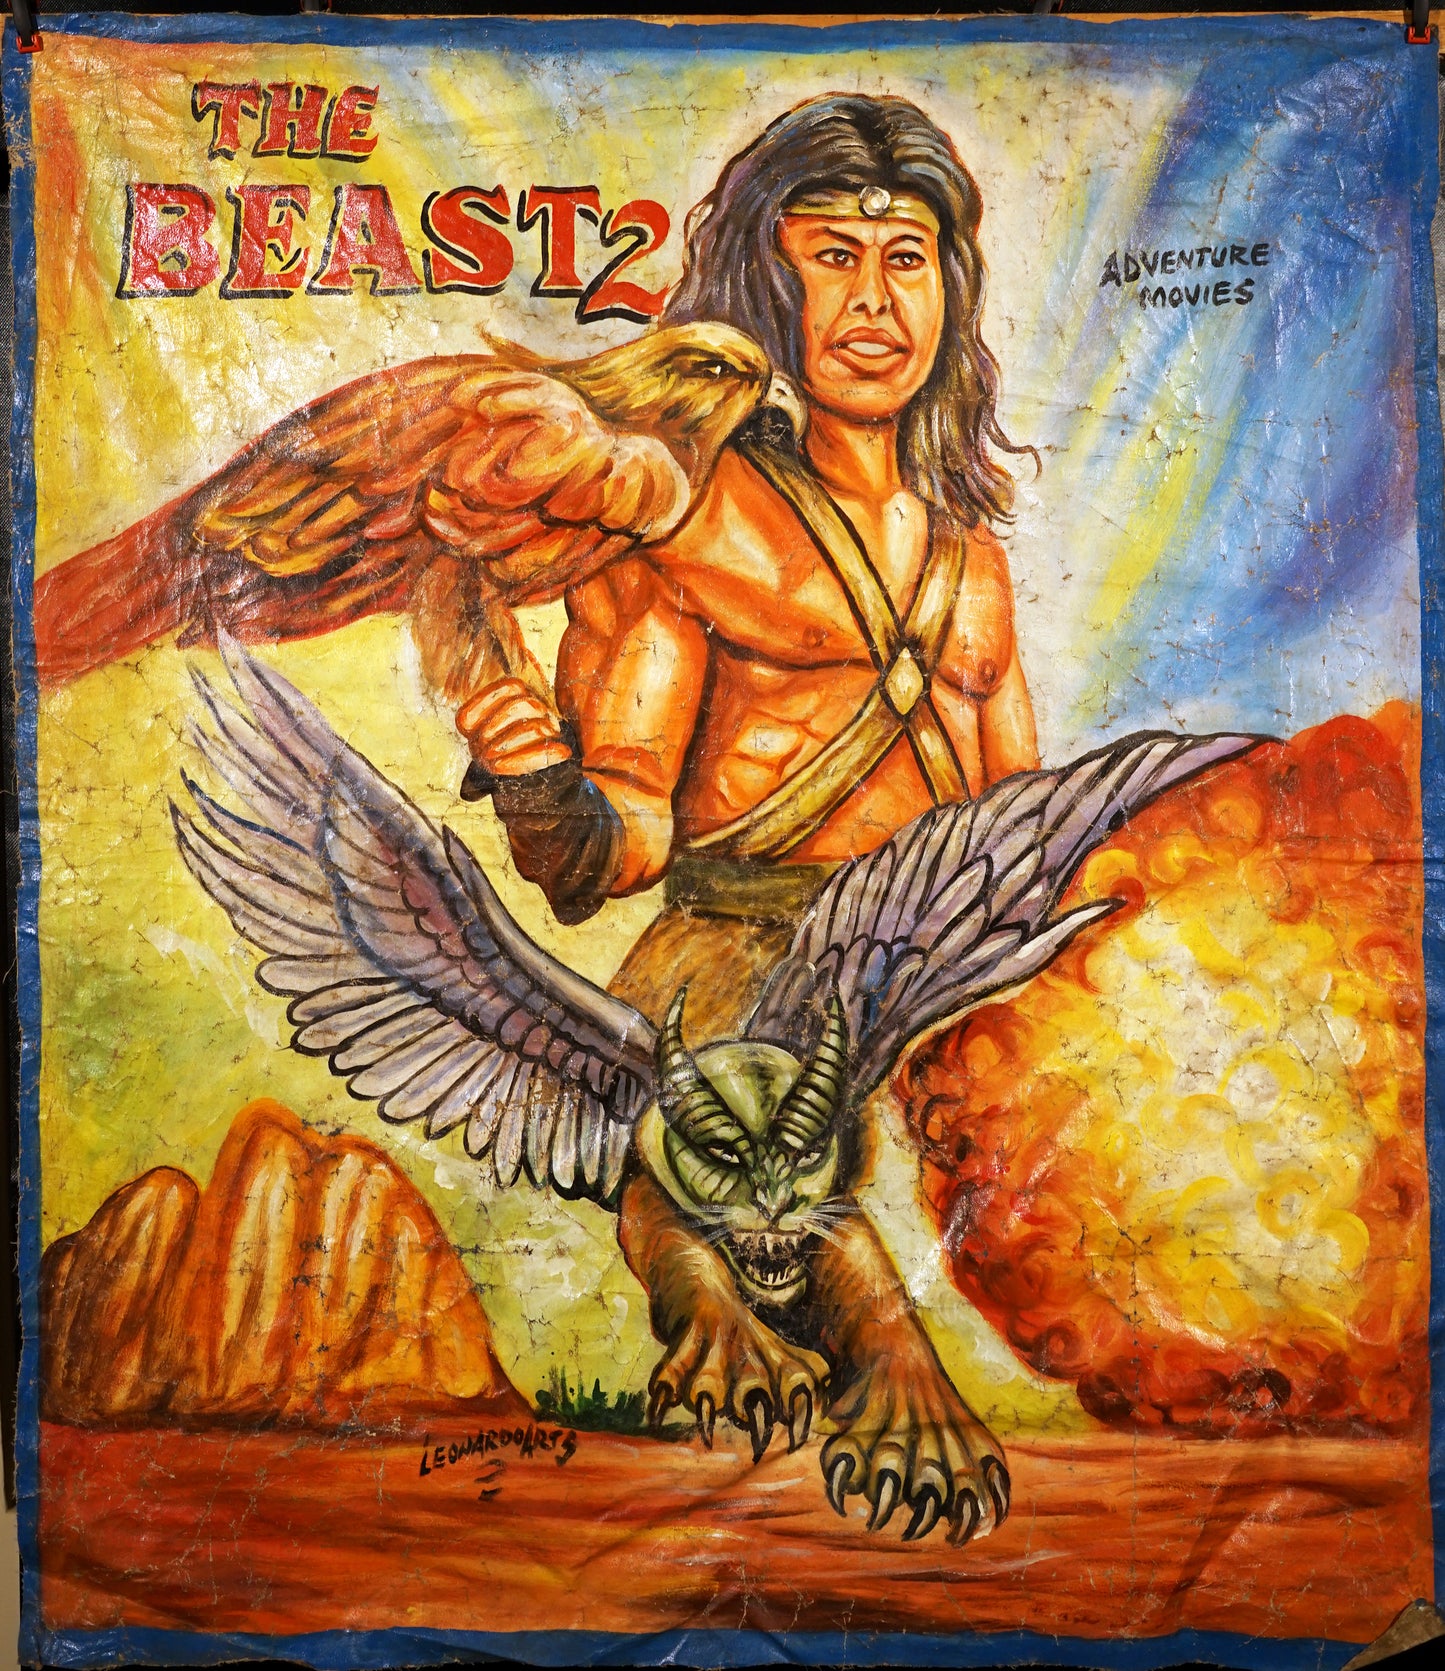 "The Beast 2" by Leonardo Arts